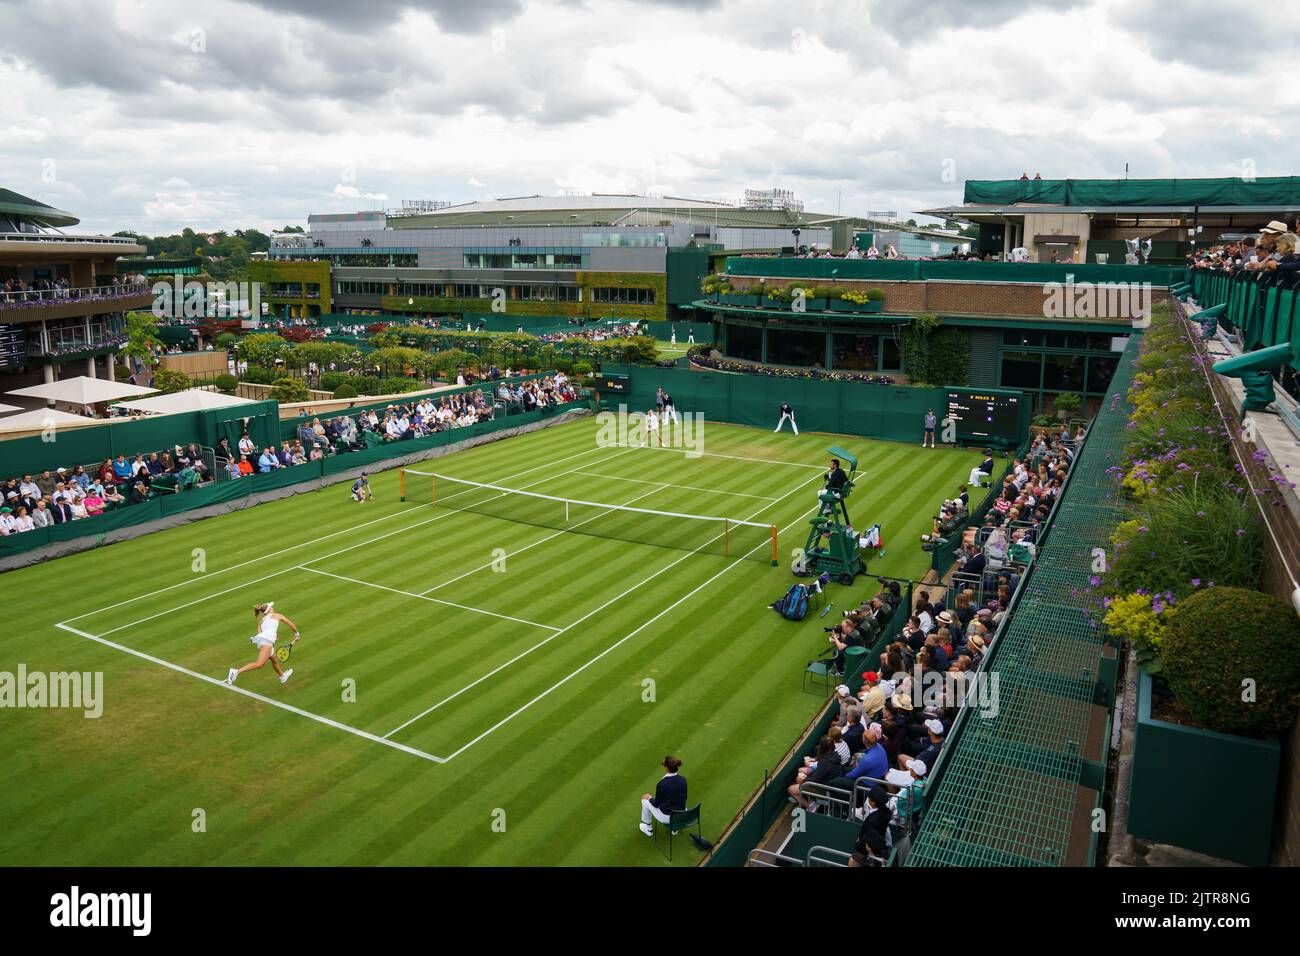 Katie Swan e Clara Burel su Court 18 ai Campionati 2022. Si tiene all'All England Lawn Tennis Club di Wimbledon. Giorno 2 Martedì 28/06/2022. Foto Stock